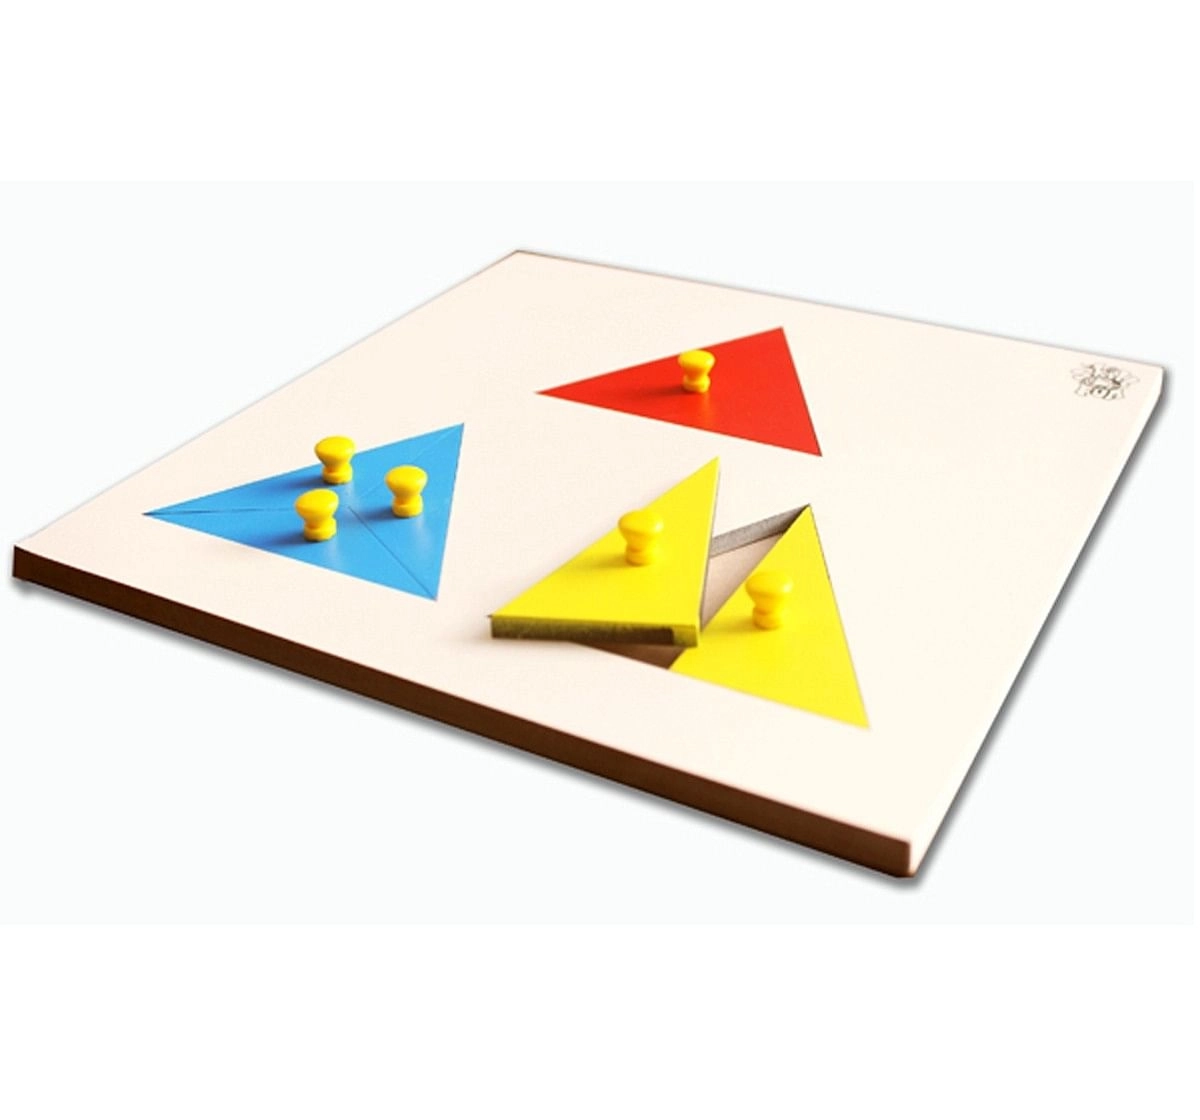 Skillofun Parts Of Triangle Tray Multicolour 2Y+